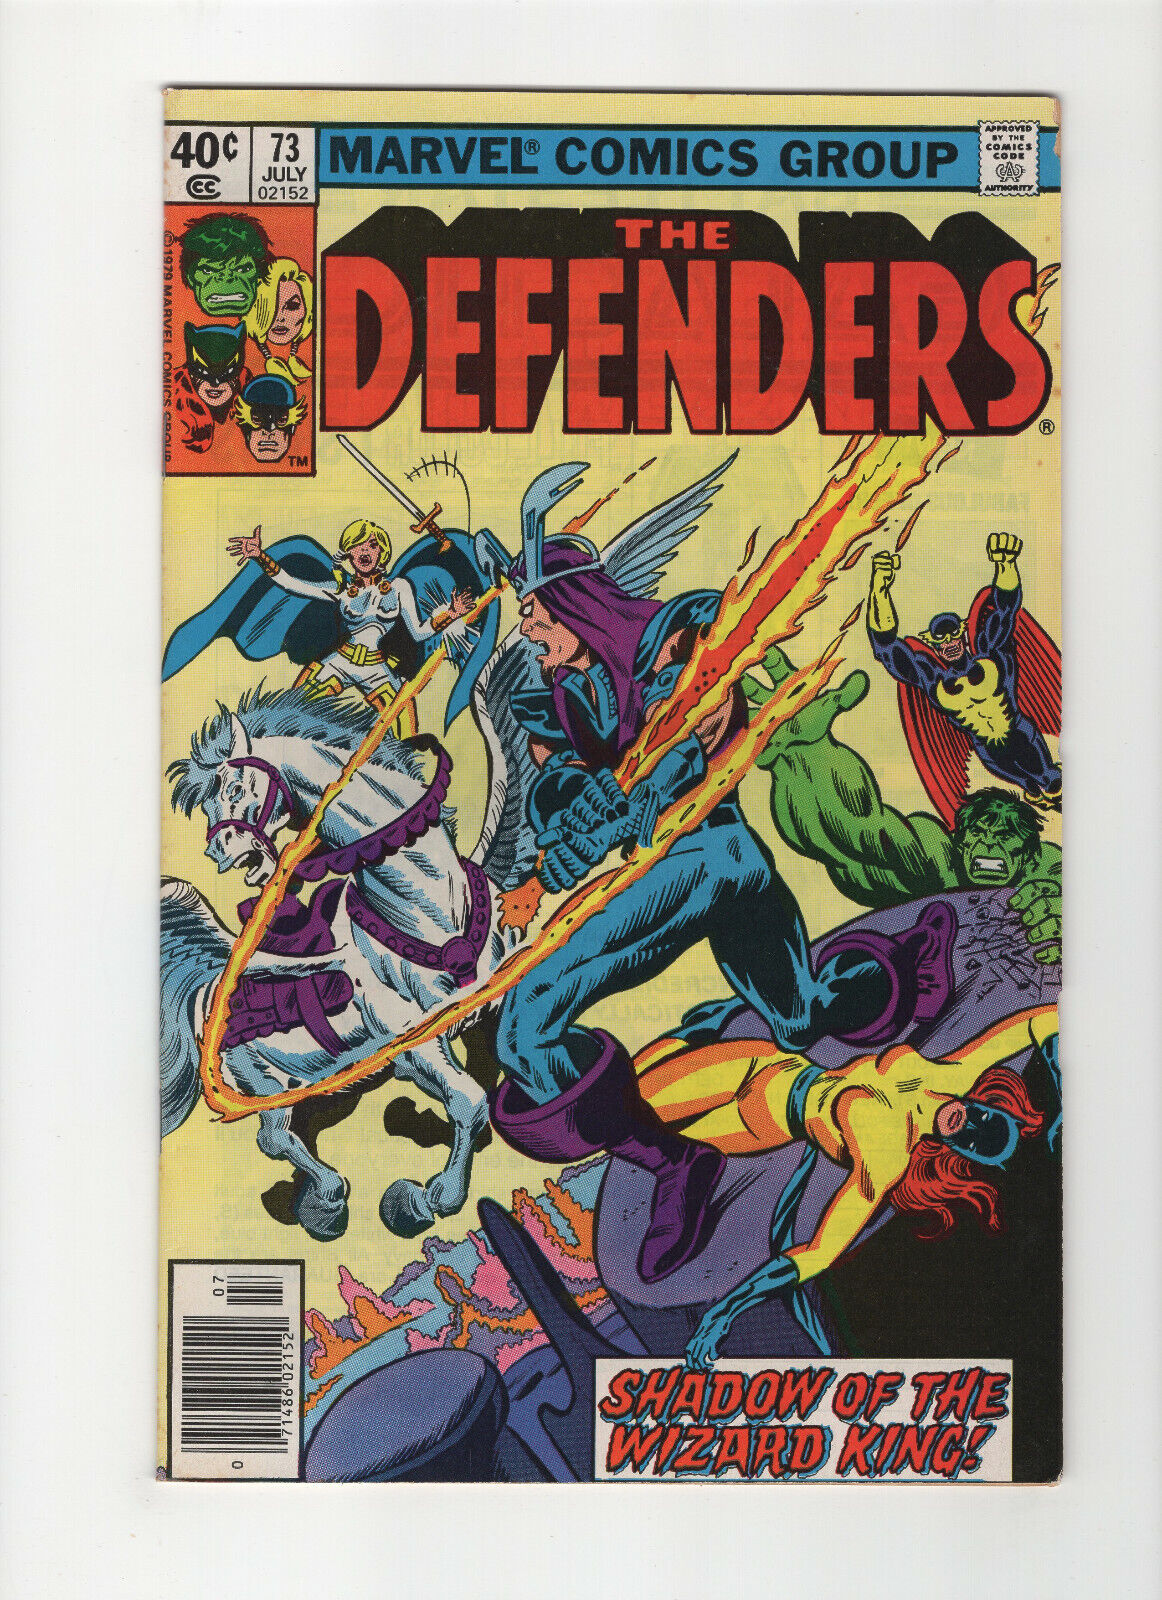 The Defenders #73 (Marvel Comics 1979)  Mark Jewelers